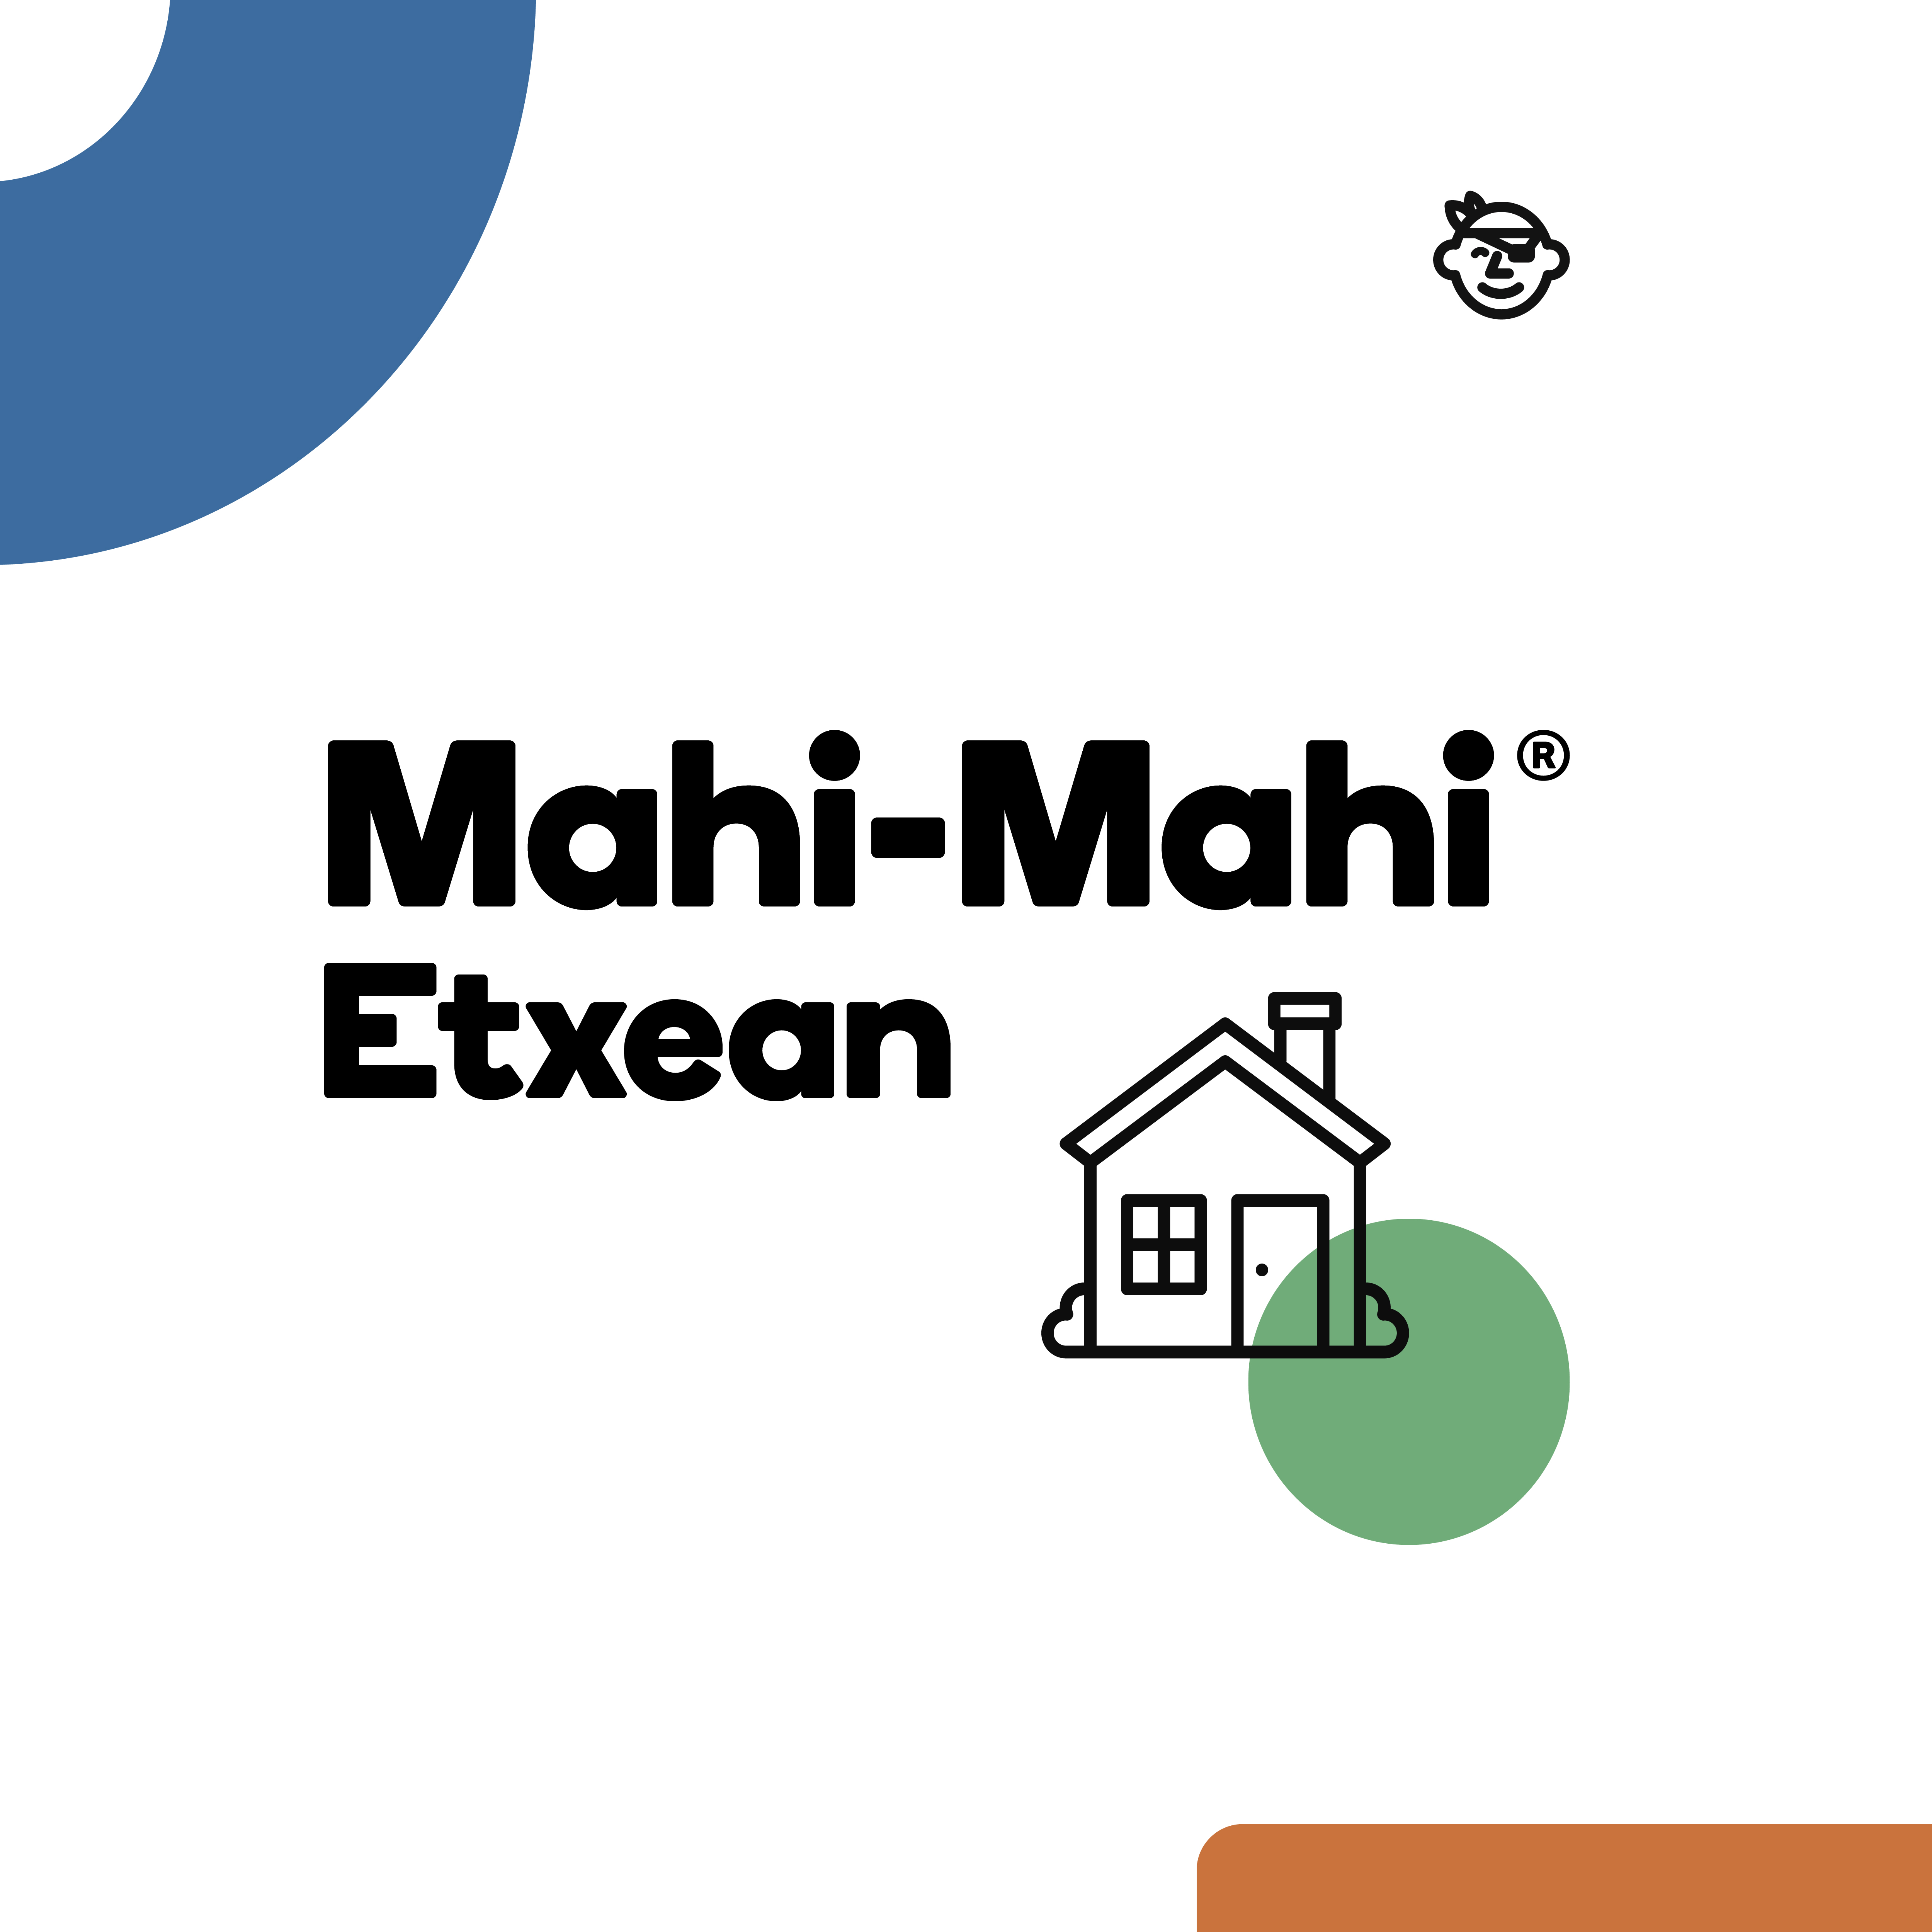 Mahi-Mahi Etxean